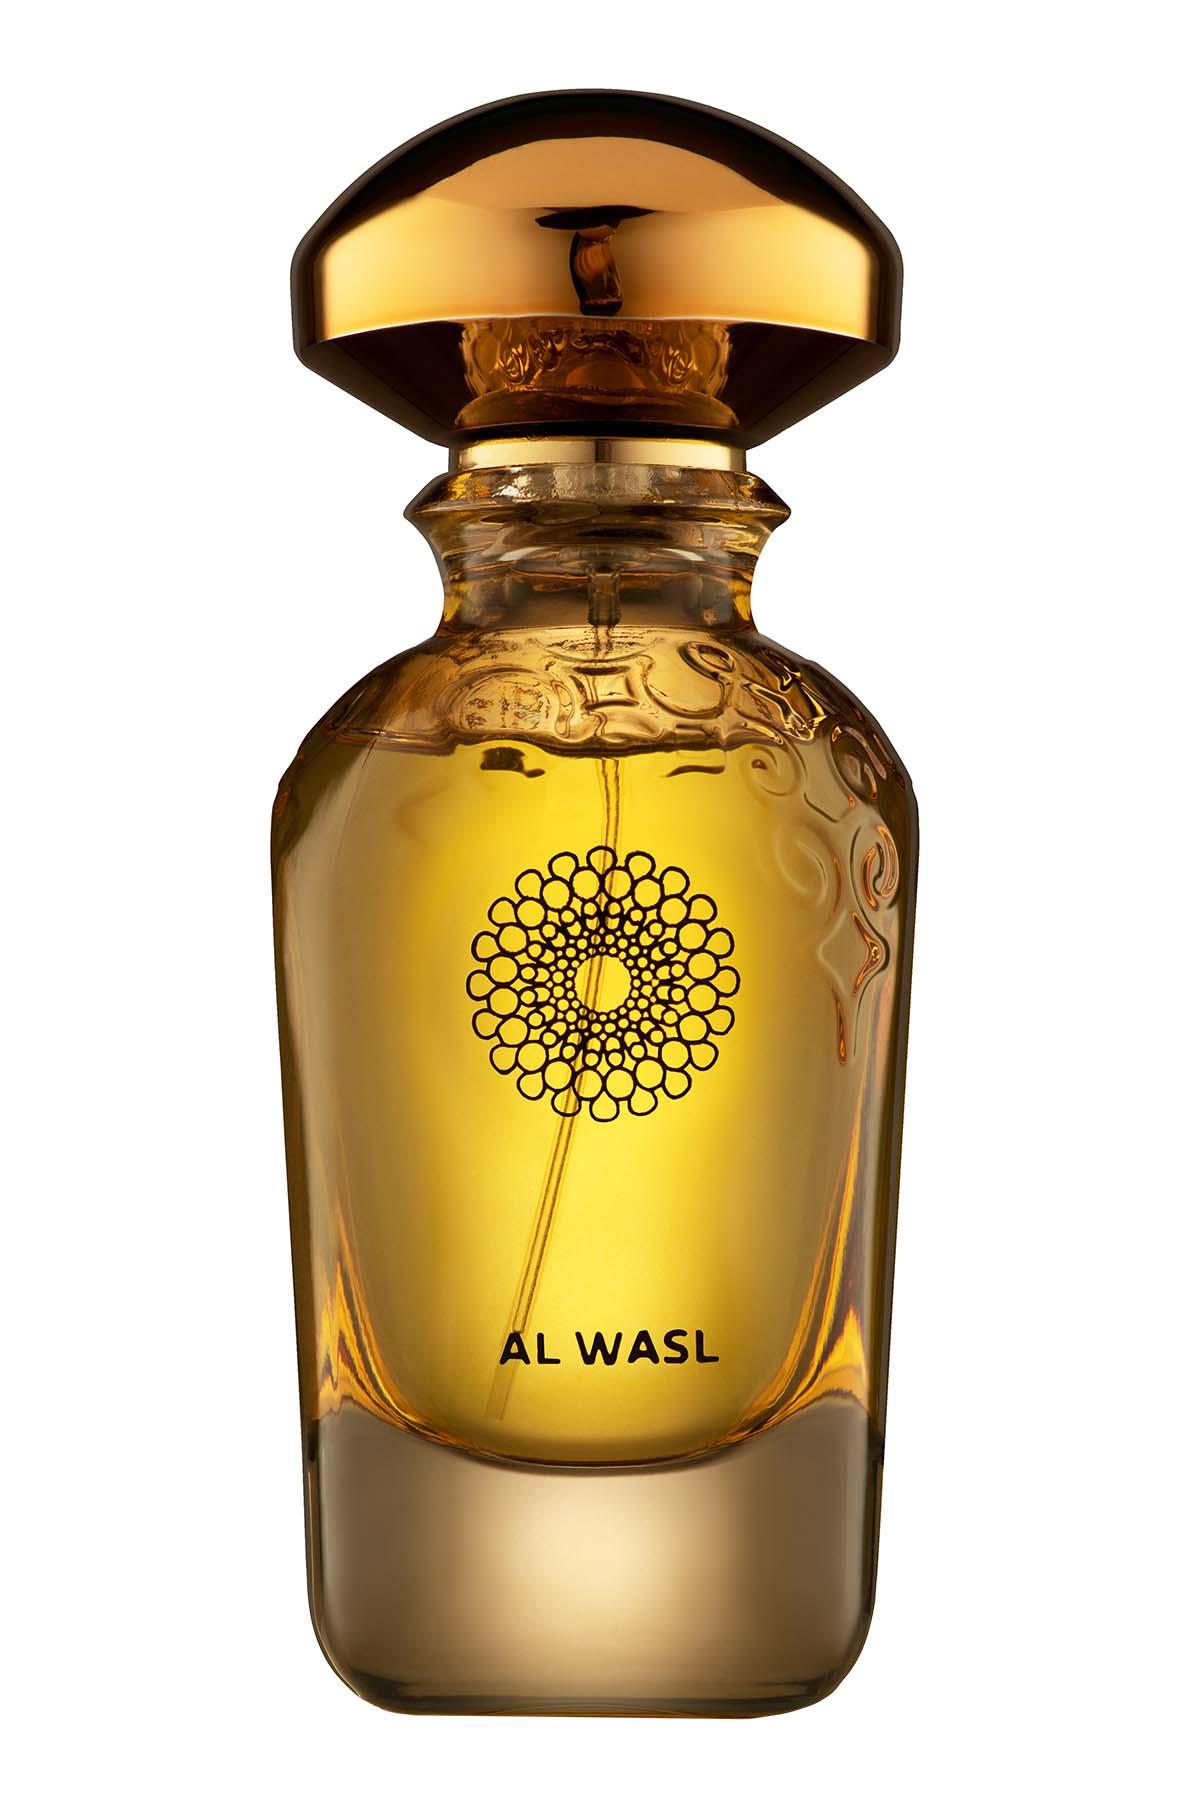 Widian Al Wasl Extrait de Parfum